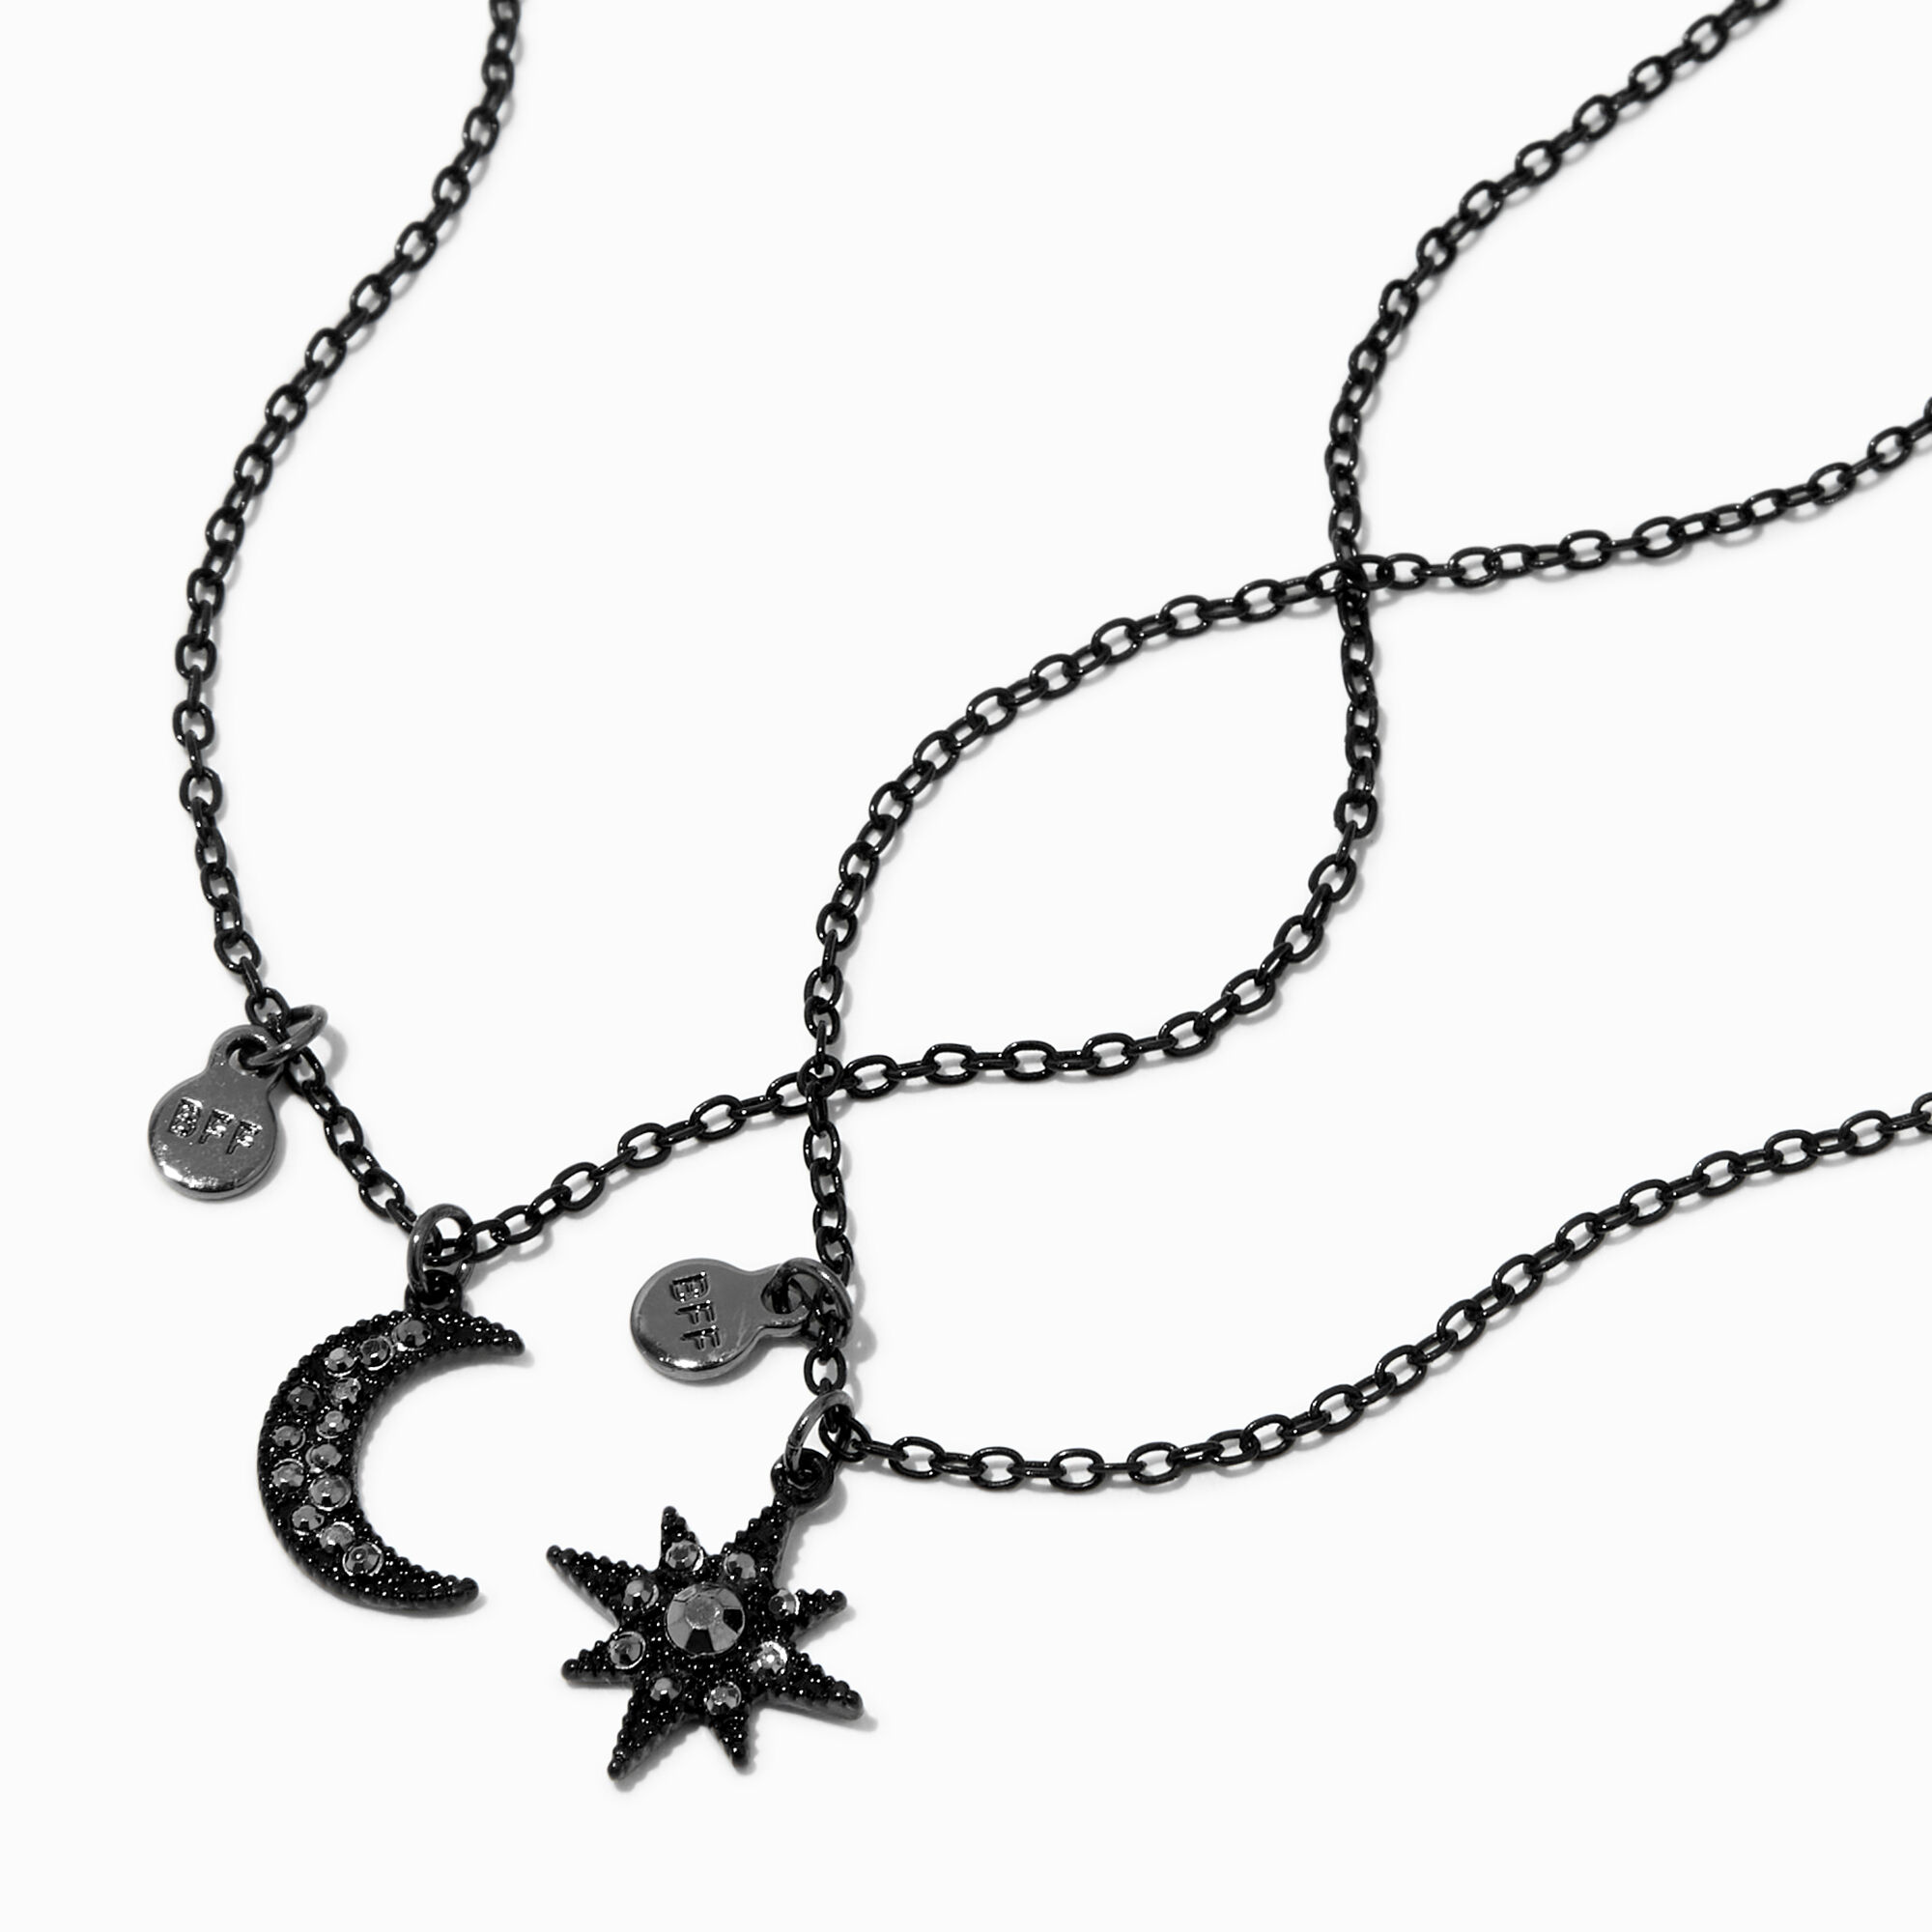 View Claires Best Friends Celestial Pendant Necklaces 2 Pack Black information